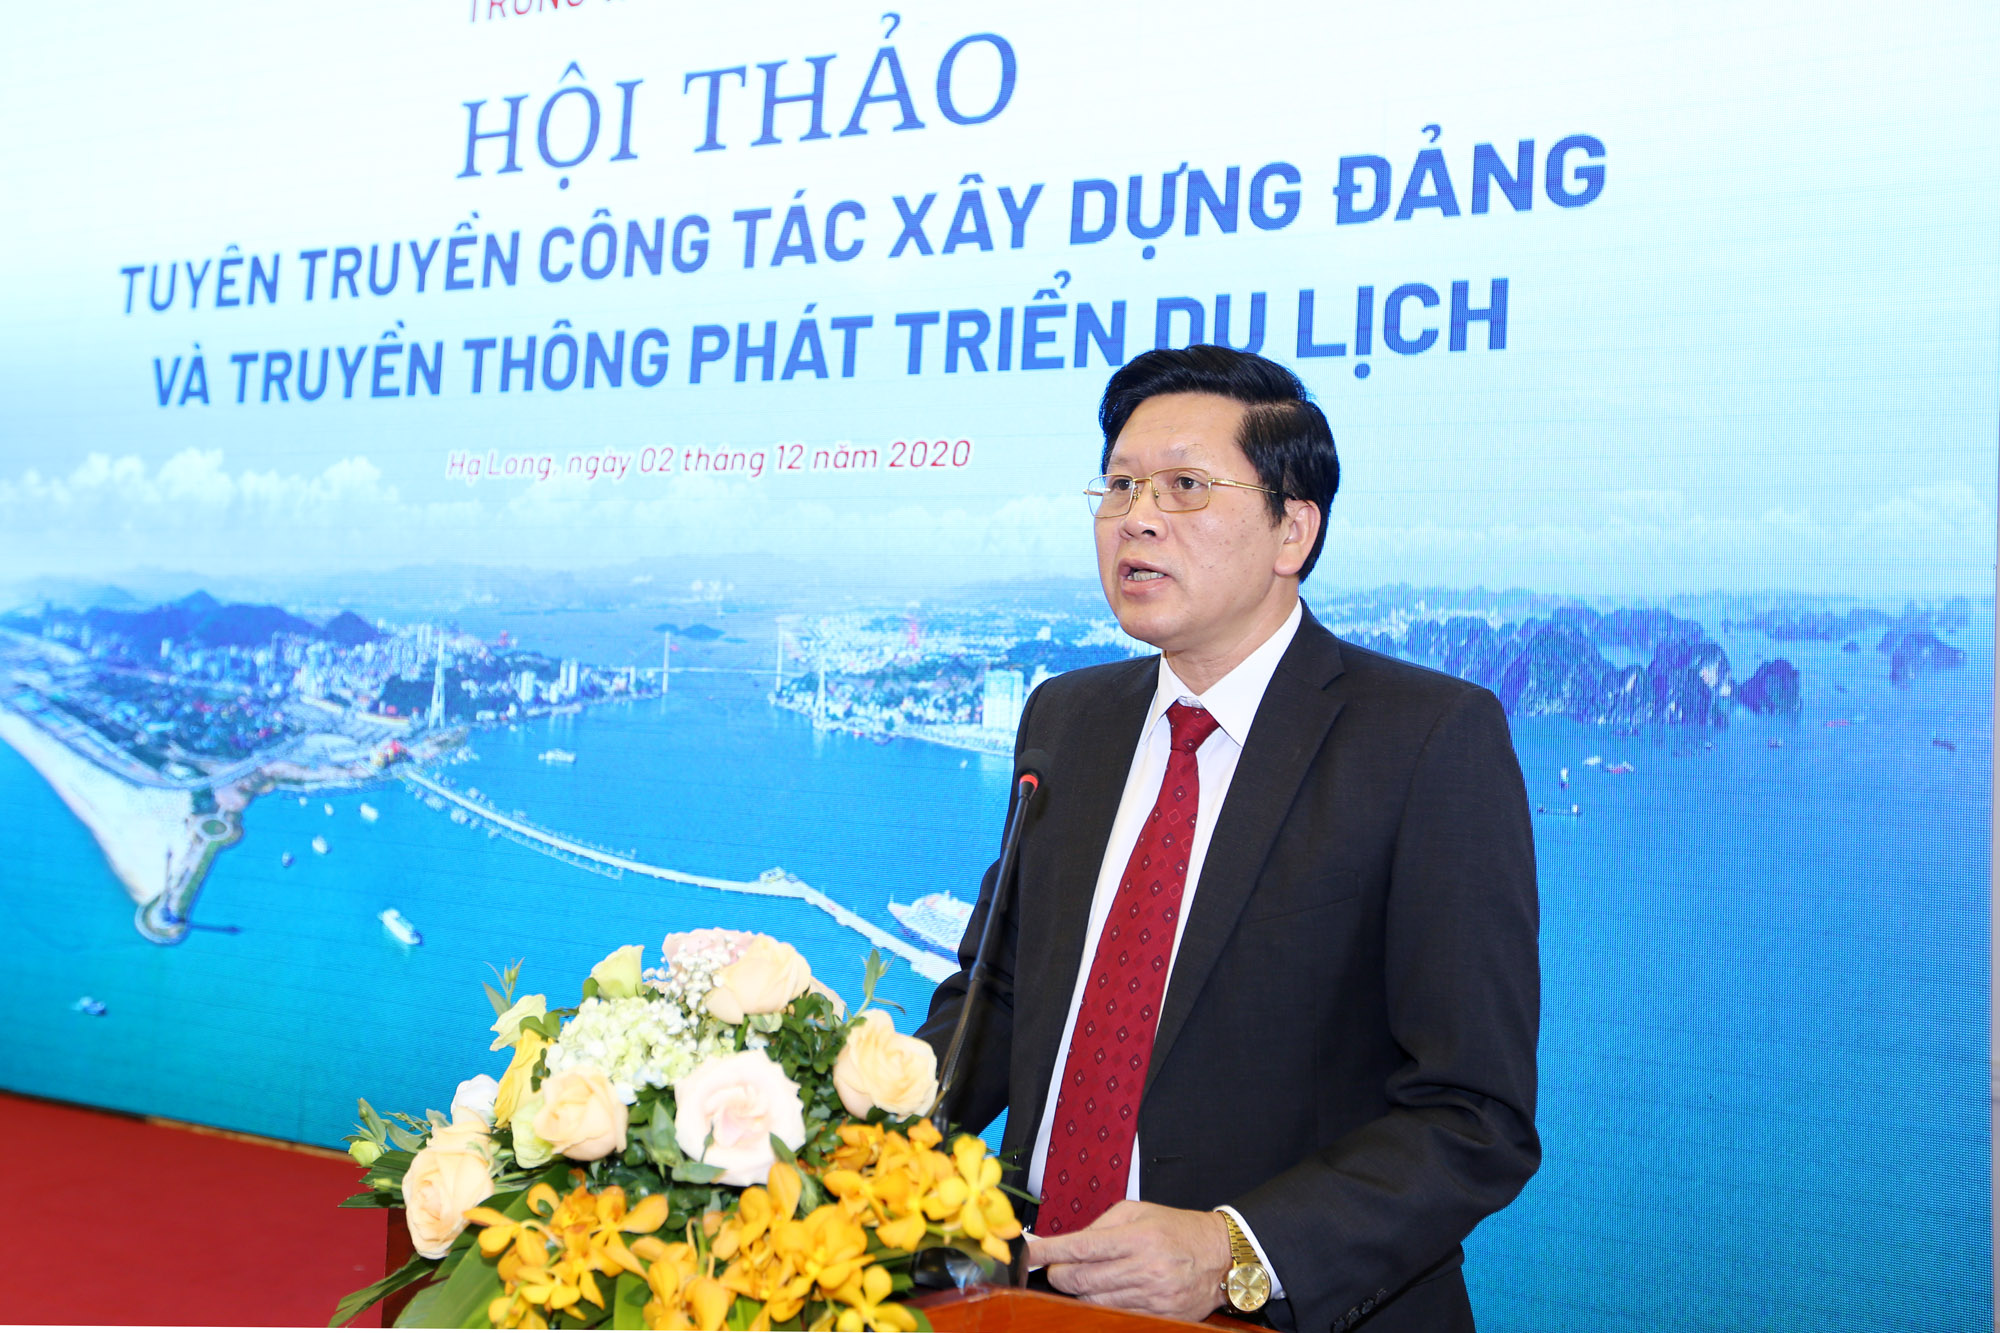 Đồng chí Phạm Hồng Cẩm, Phó Trưởng Ban Tuyên giáo, phát biểu tại hội thảo.